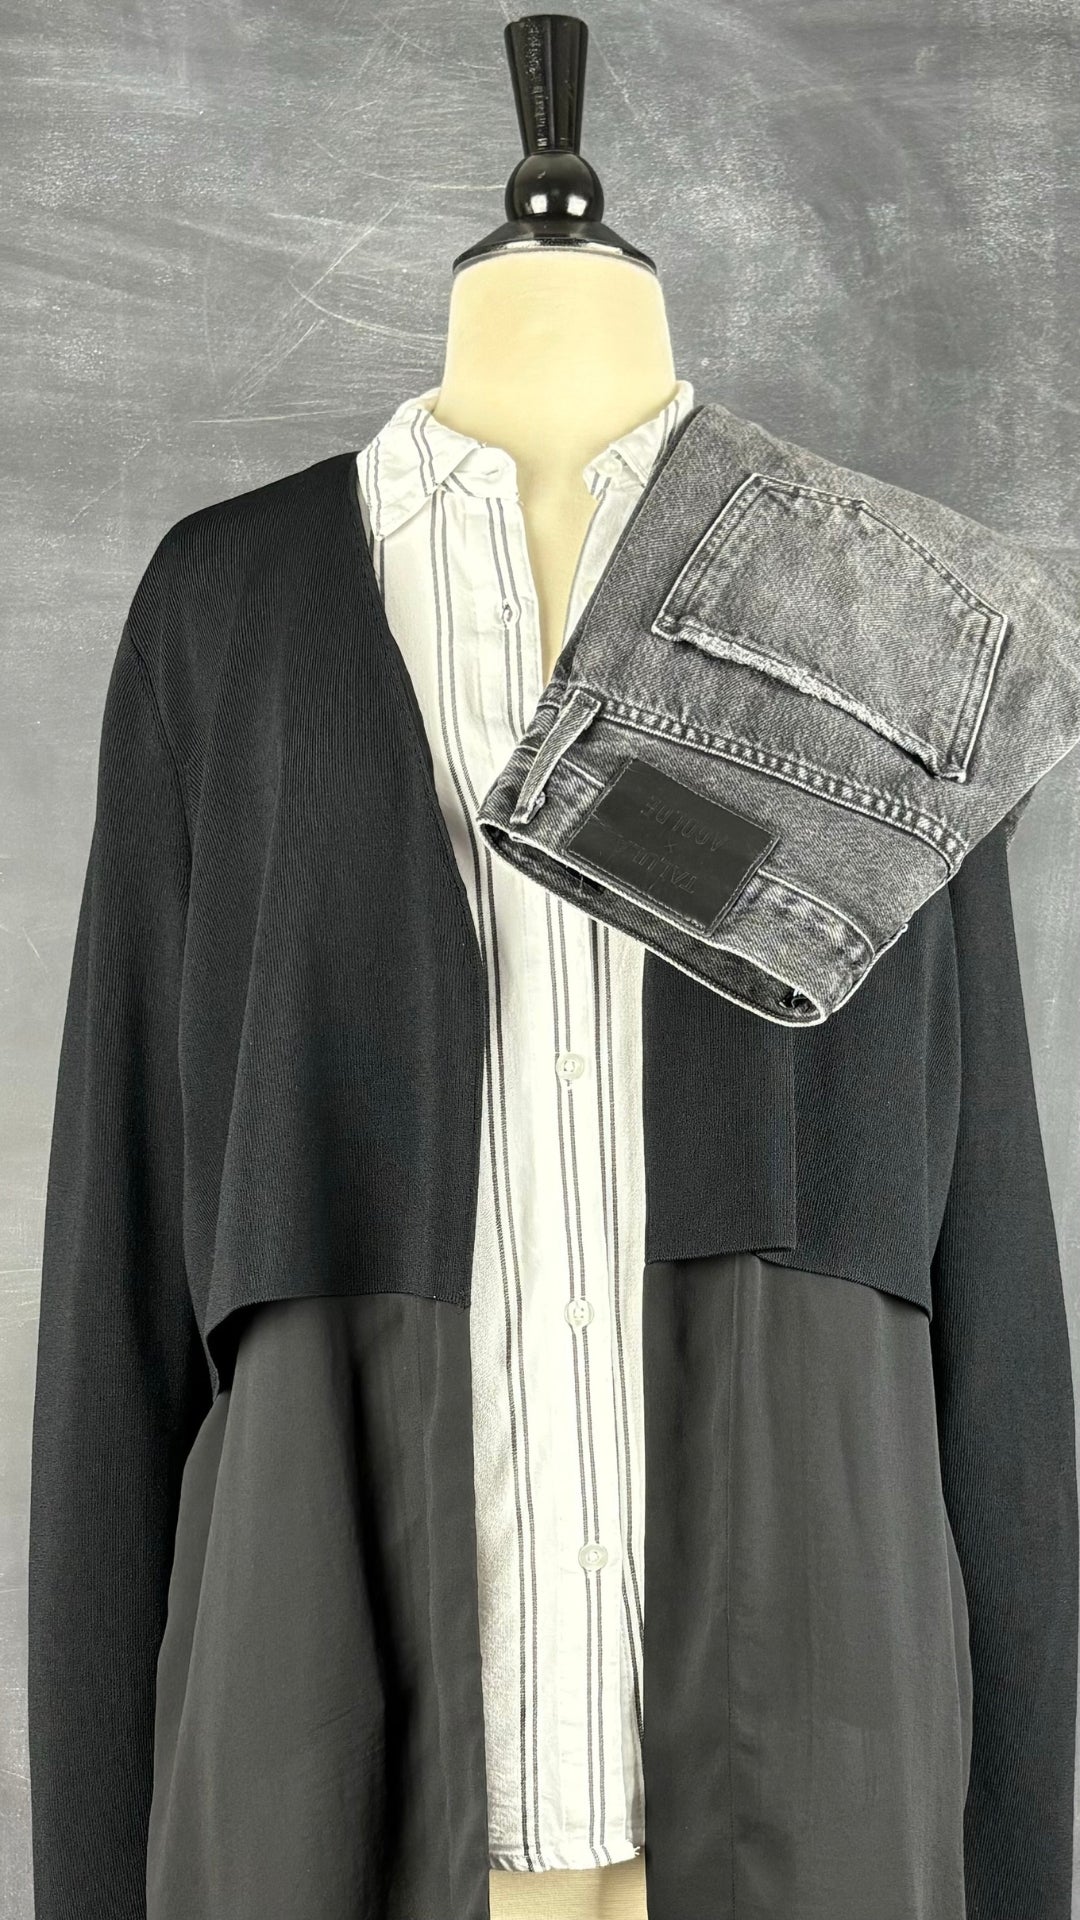 Veste noire longue bi-matière Cos, taille xs. Vue de l'agencement avec le chemisier en fine flanelle à rayures et le jeans Agolde x Talula.